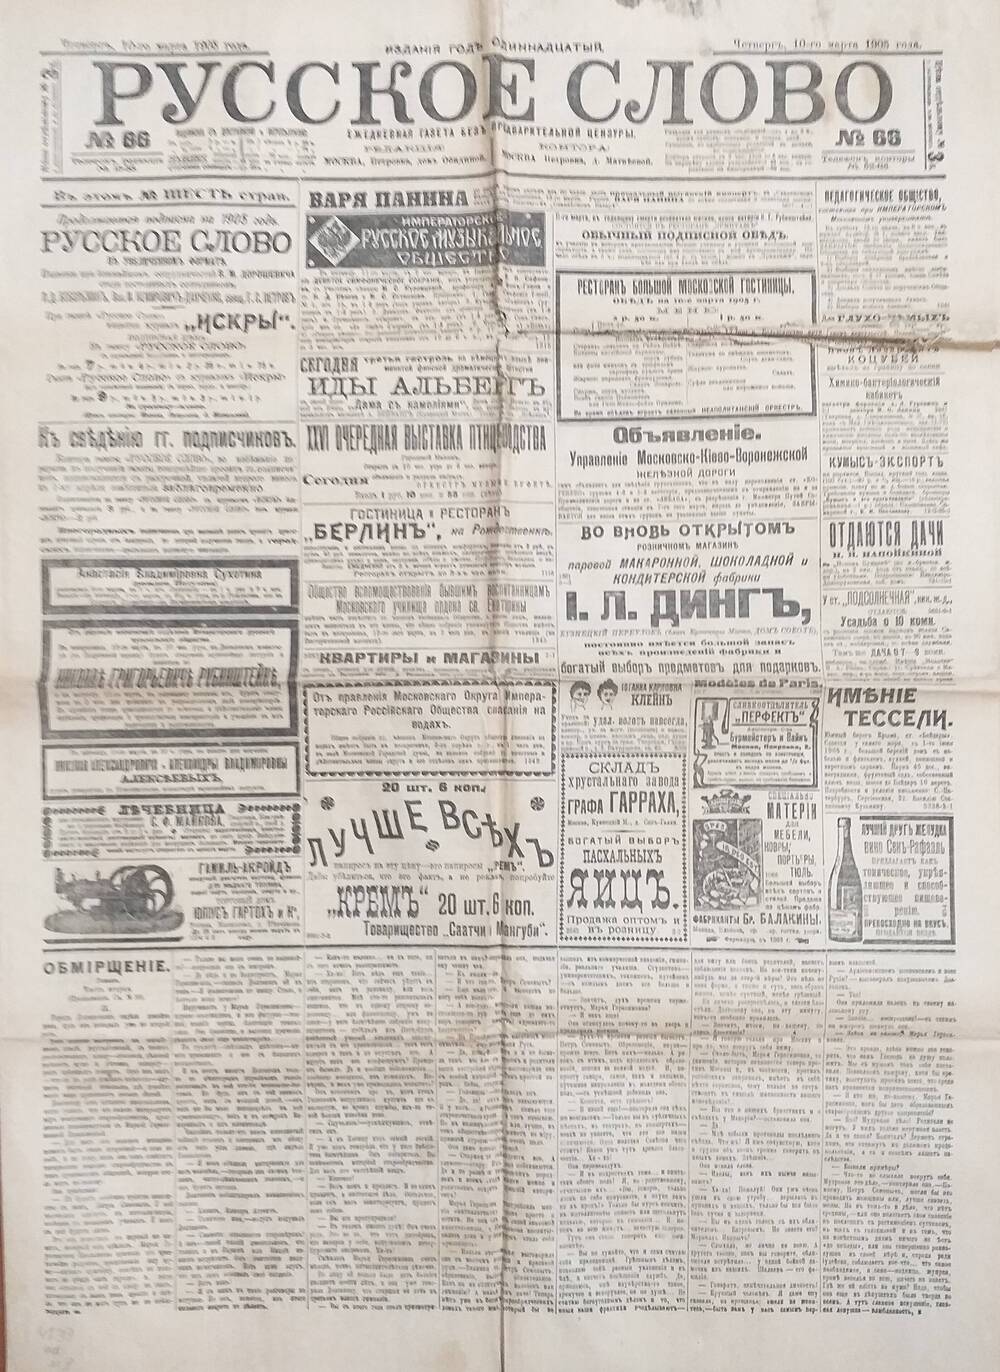 Газета Русское слово № 66 от 10.03.1905 года.